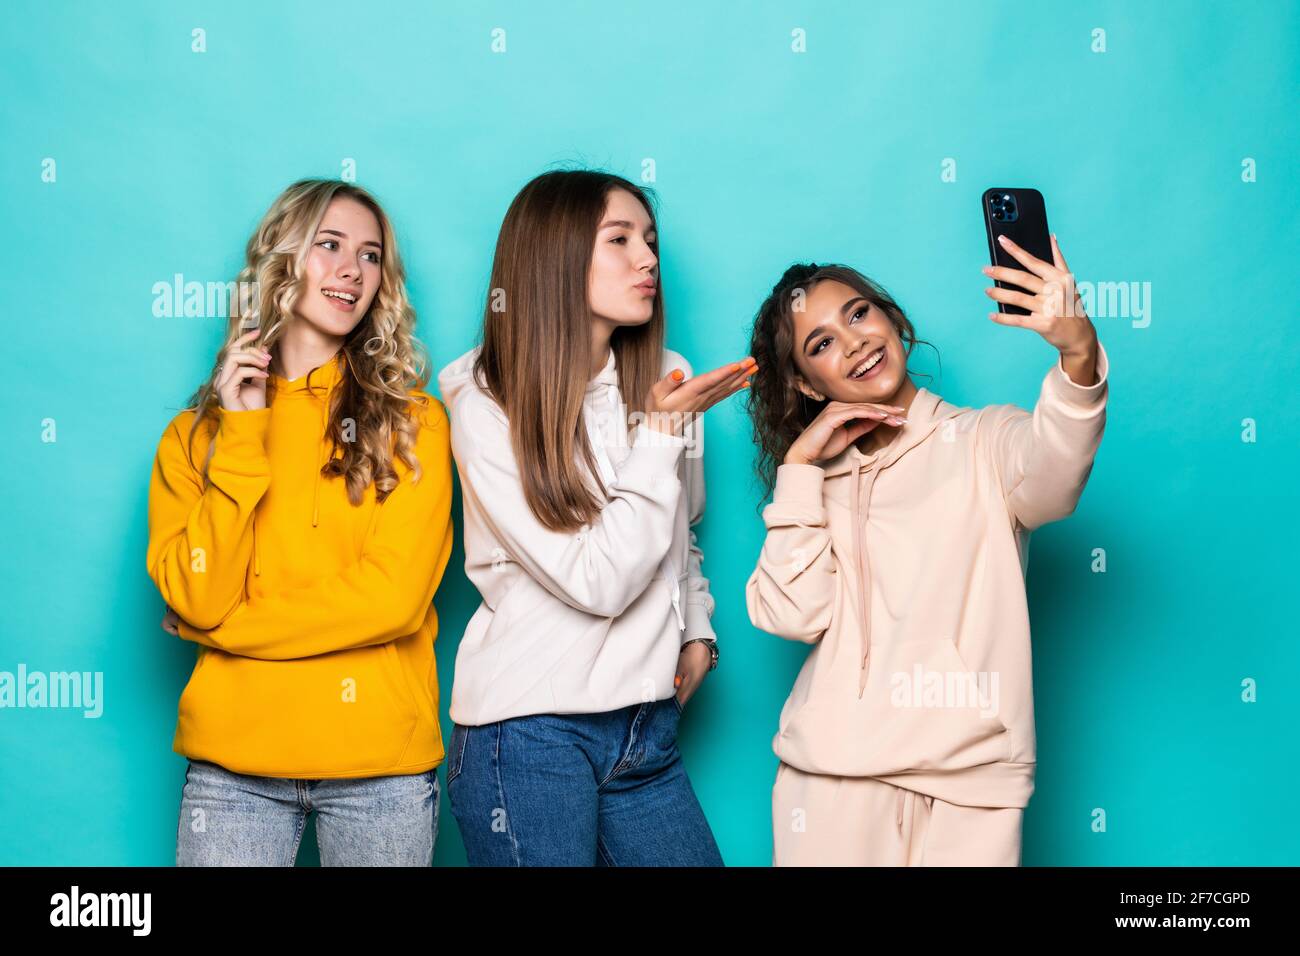 Giovani tre ragazze multietniche amici prendere un selfie da fotocamera posa su sfondo turchese Foto Stock